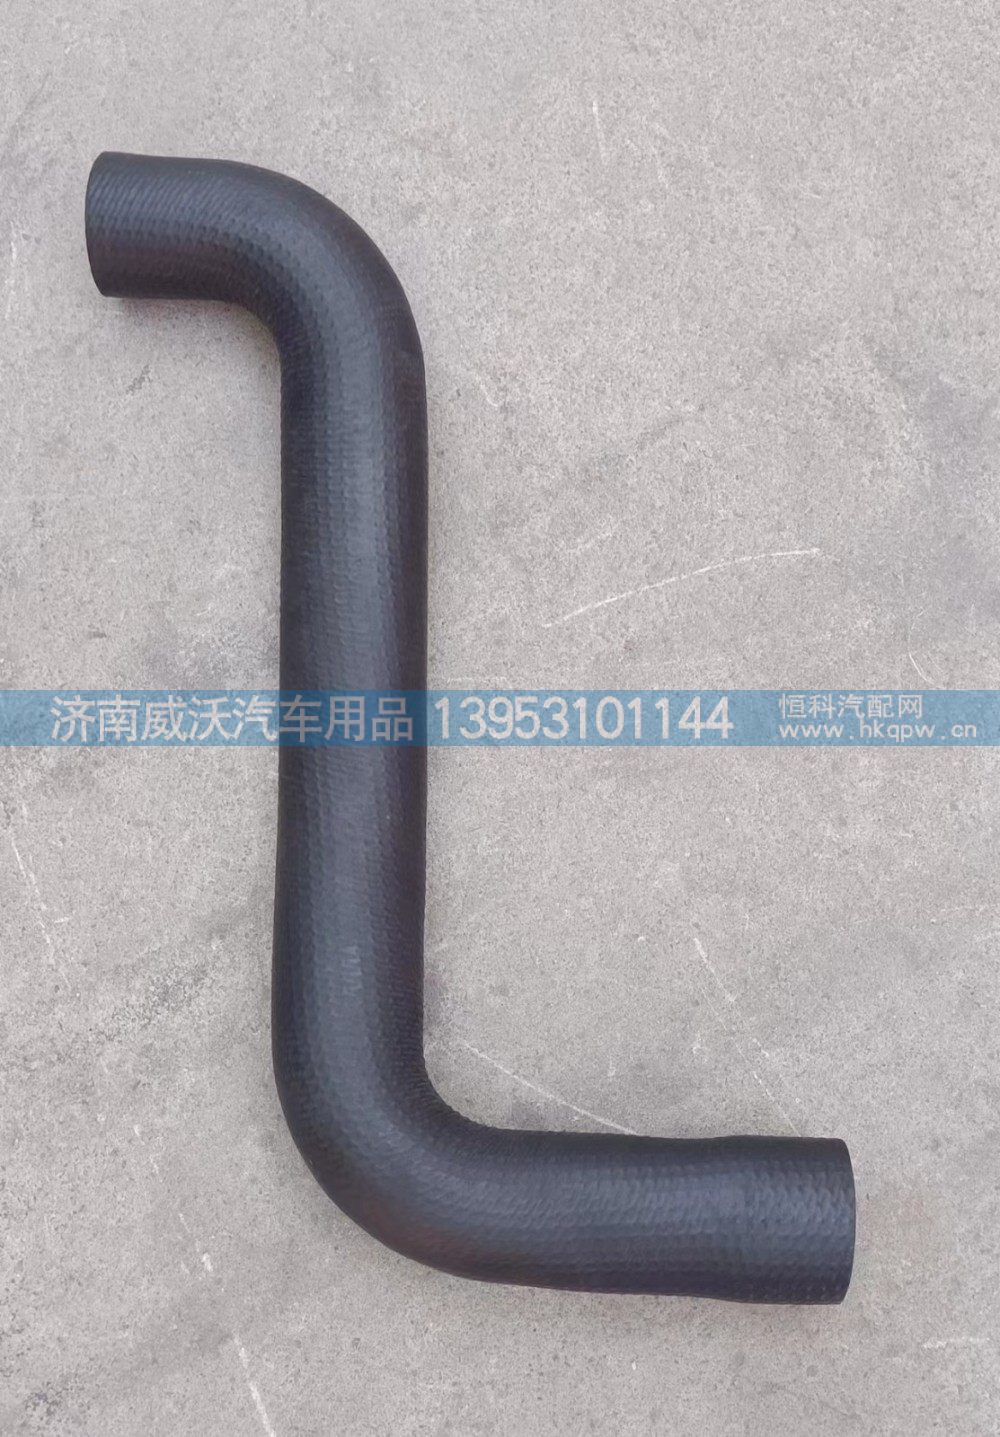 WG9725535145,散热器进水胶管,济南市威沃汽车用品有限公司